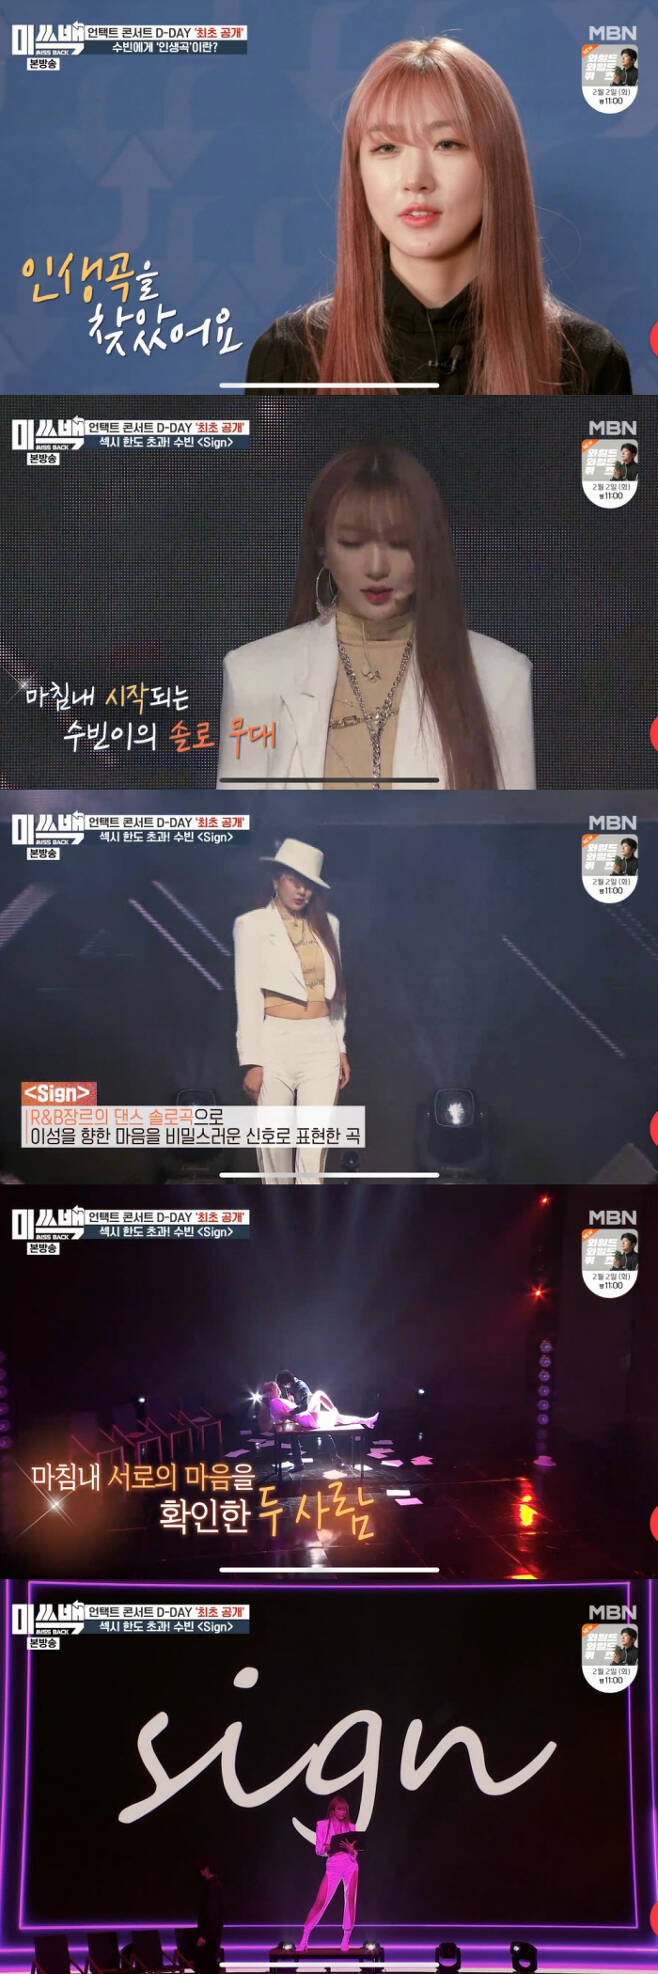 수빈이 MBN ‘미쓰백’에서 ‘사인’ 라이브 공연을 펼치고 있다. 방송화면 캡처